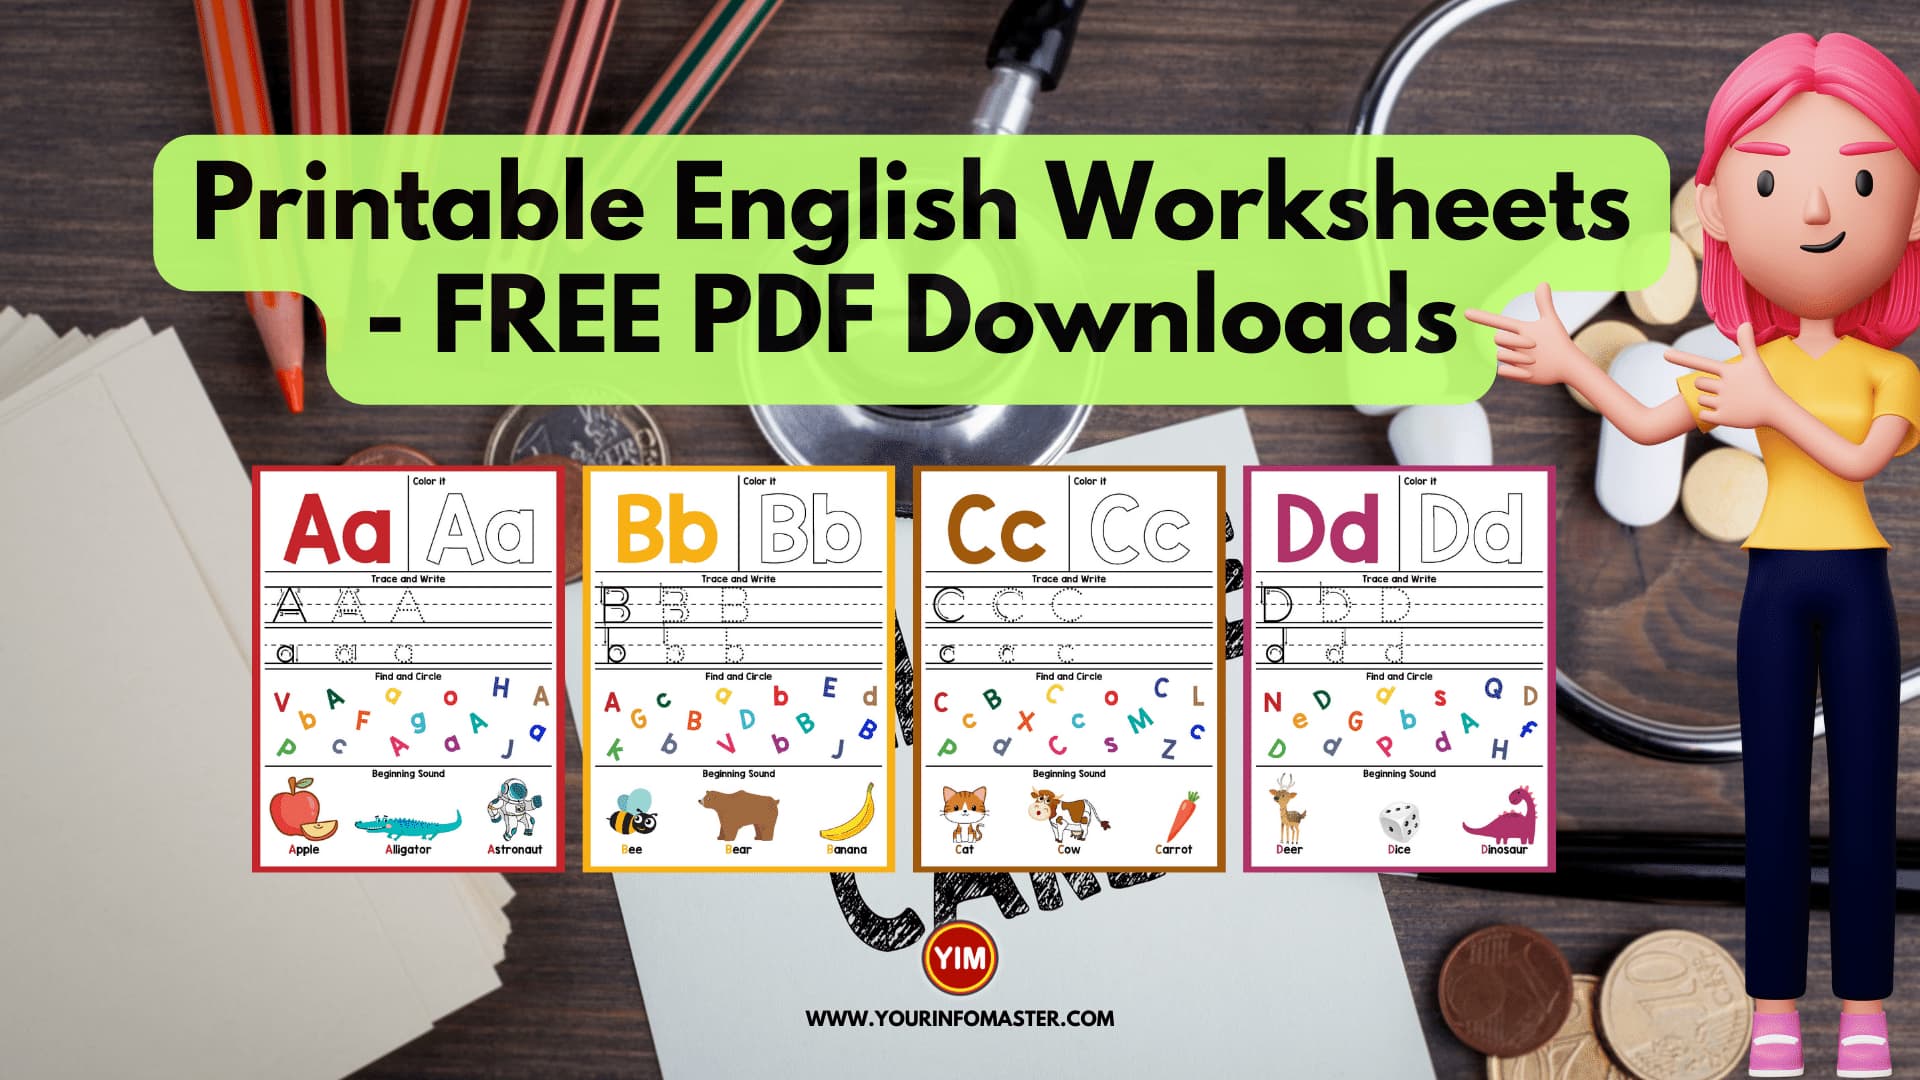 Printable English Worksheets - FREE PDF Downloads